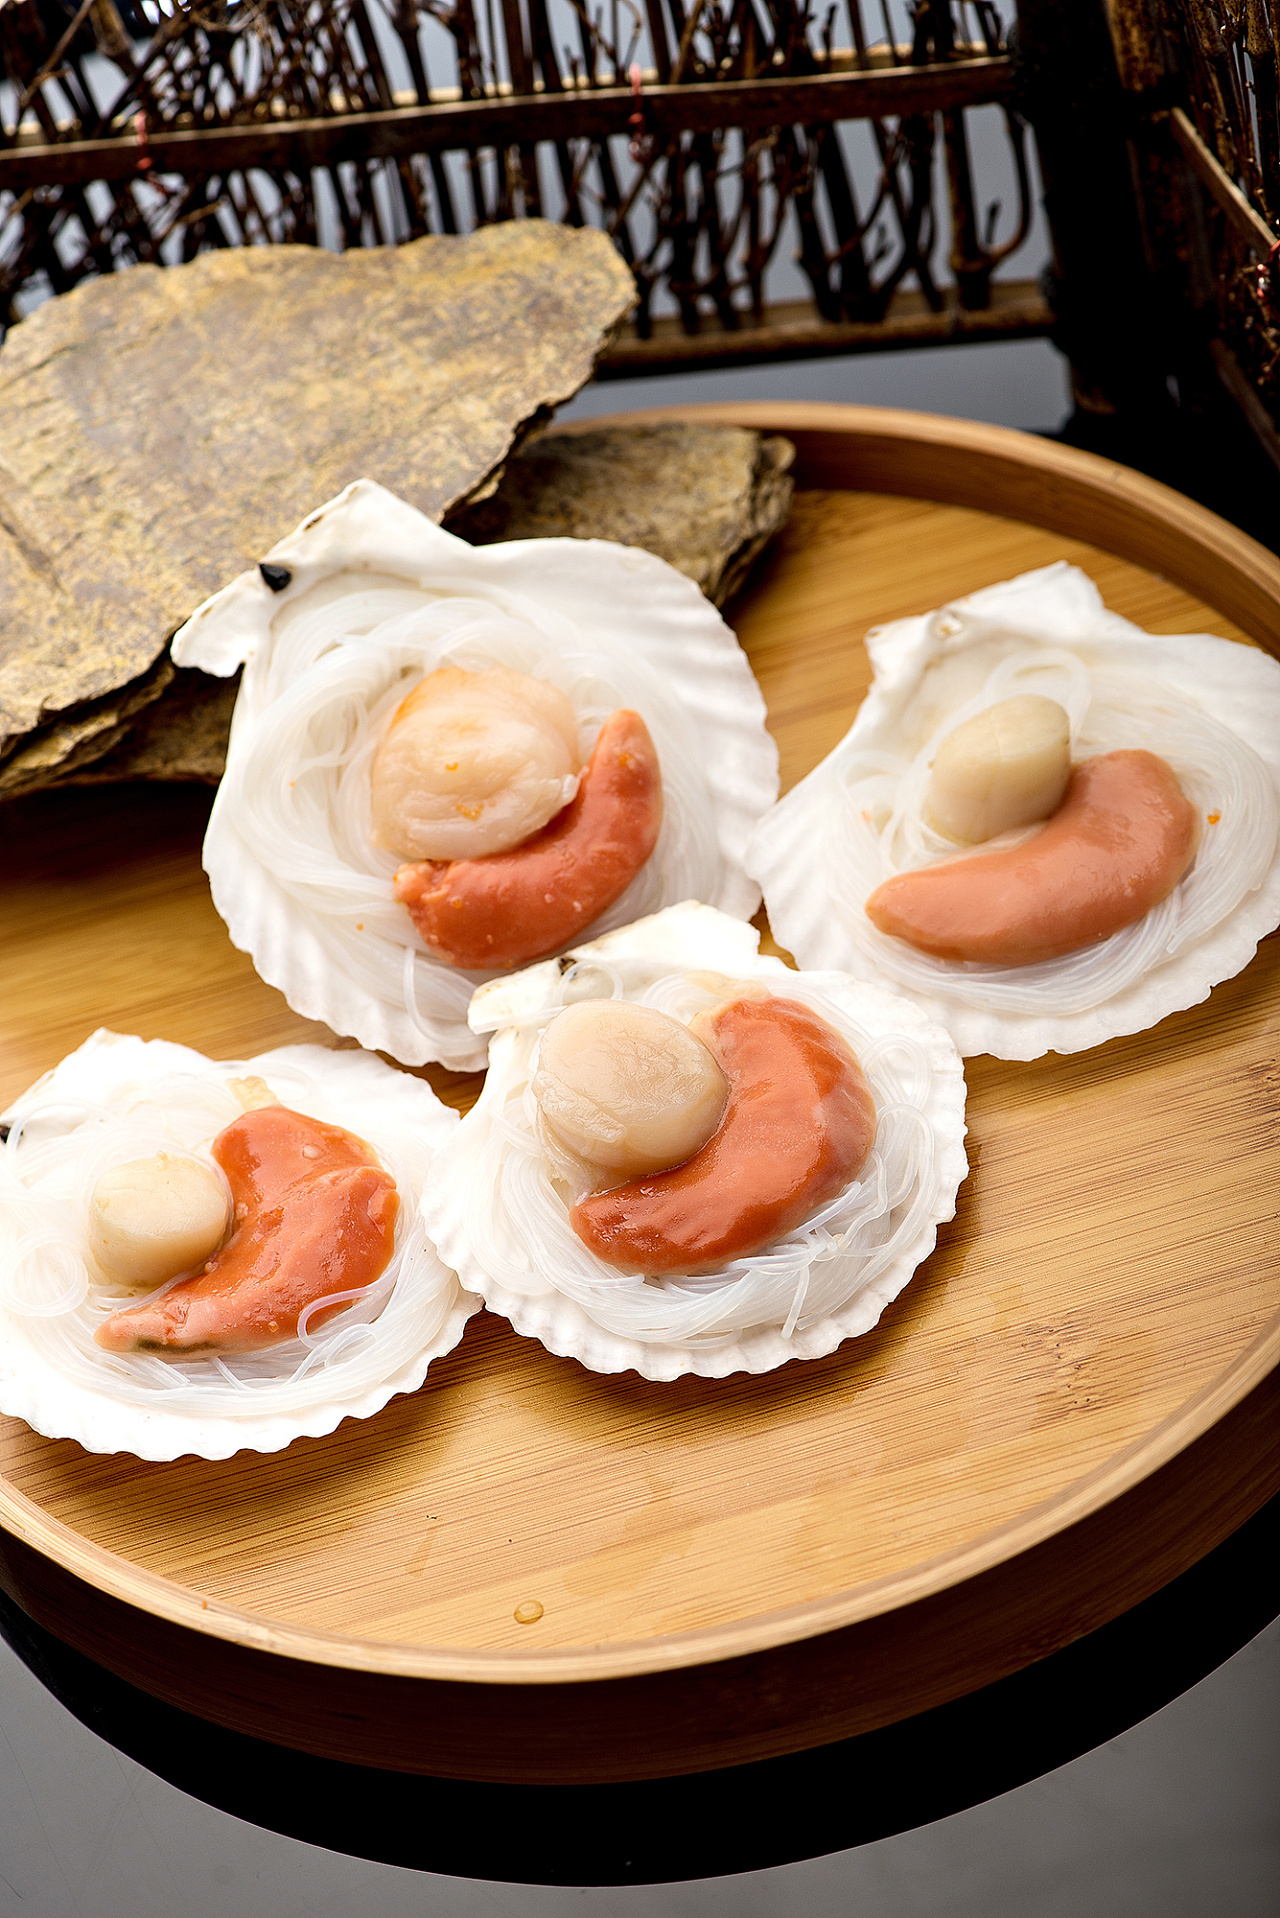 深圳人舌尖上的贝类——绝对不可错过的美食之华贵类栉孔扇贝篇_标本